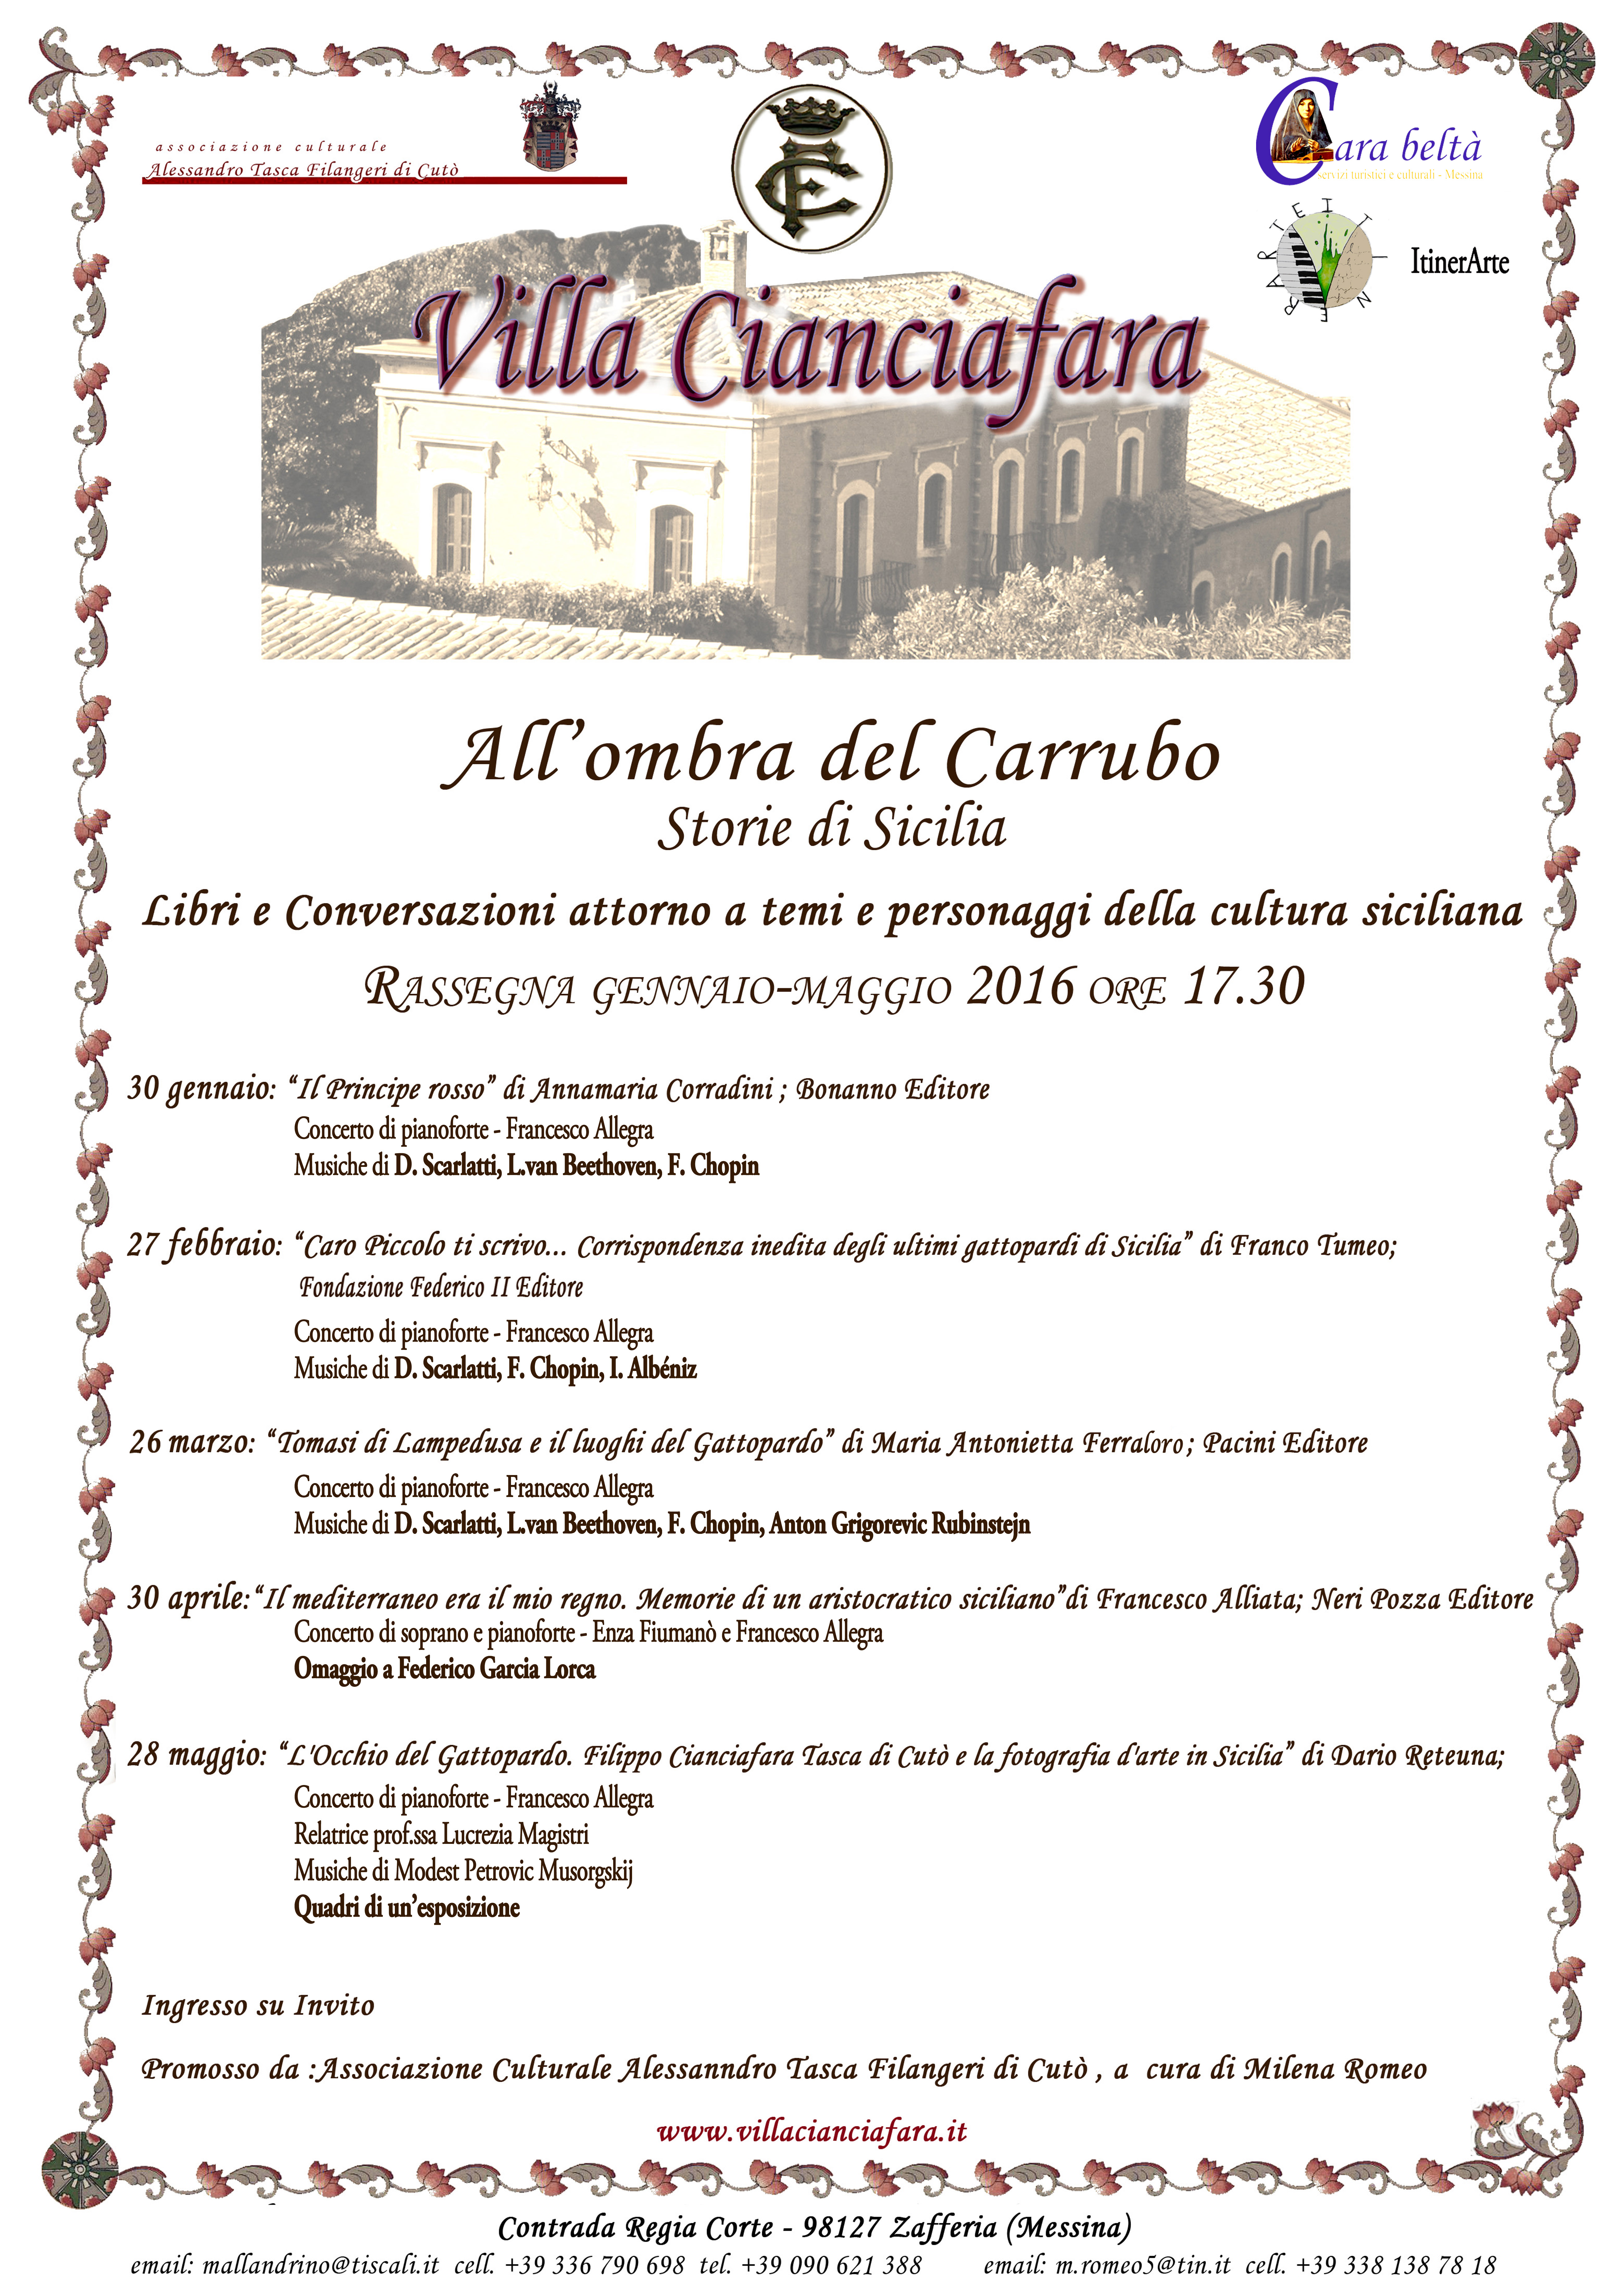 All'Ombra del Carrubbo I^ Edizione - Villa Cianciafara - Gennaio - Maggio 2016